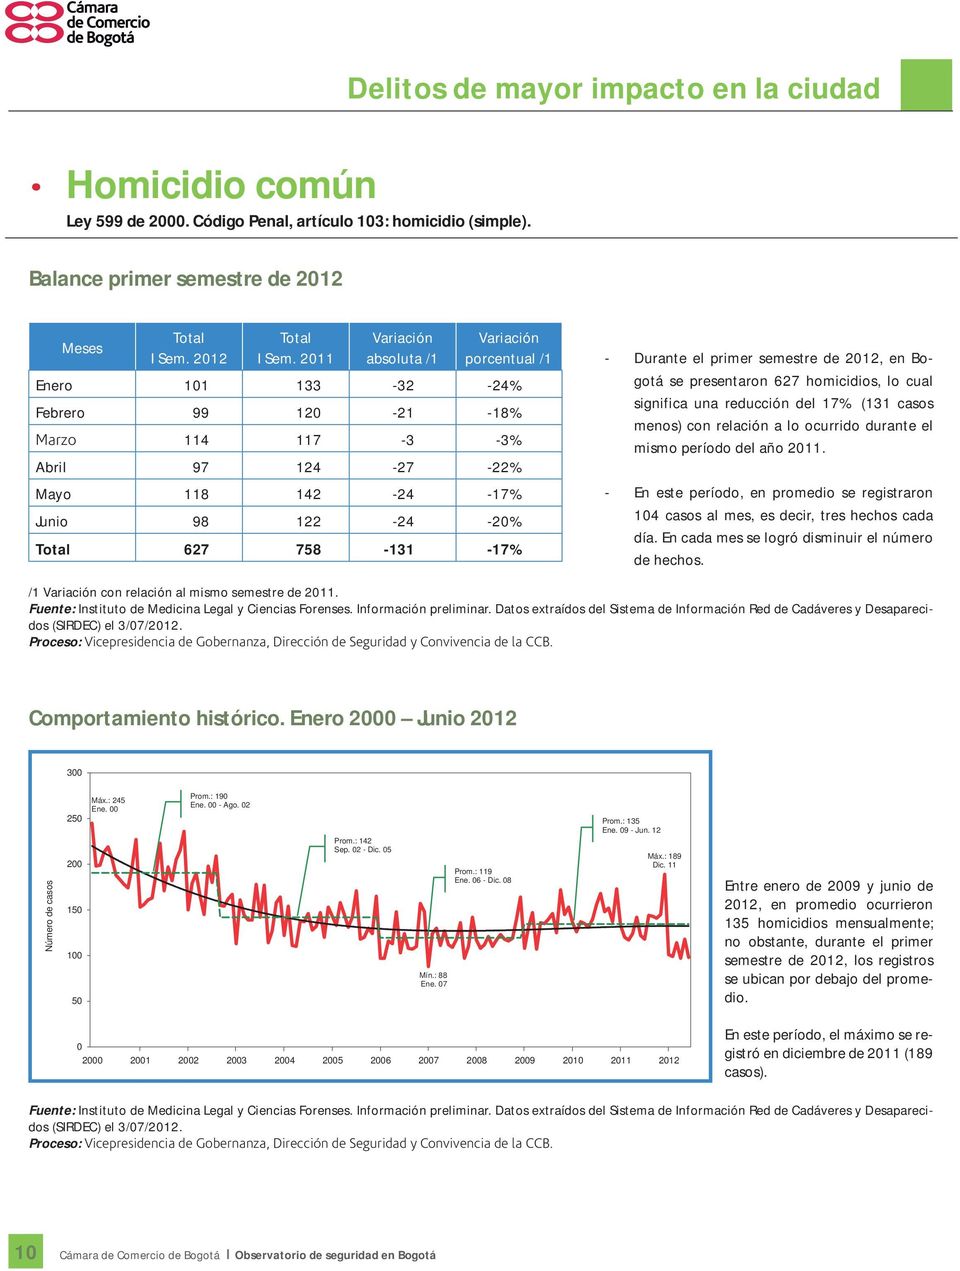 Durante el primer semestre de 2012, en Bogotá se presentaron 627 homicidios, lo cual significa una reducción del 17% (131 casos menos) con relación a lo ocurrido durante el mismo período del año 2011.